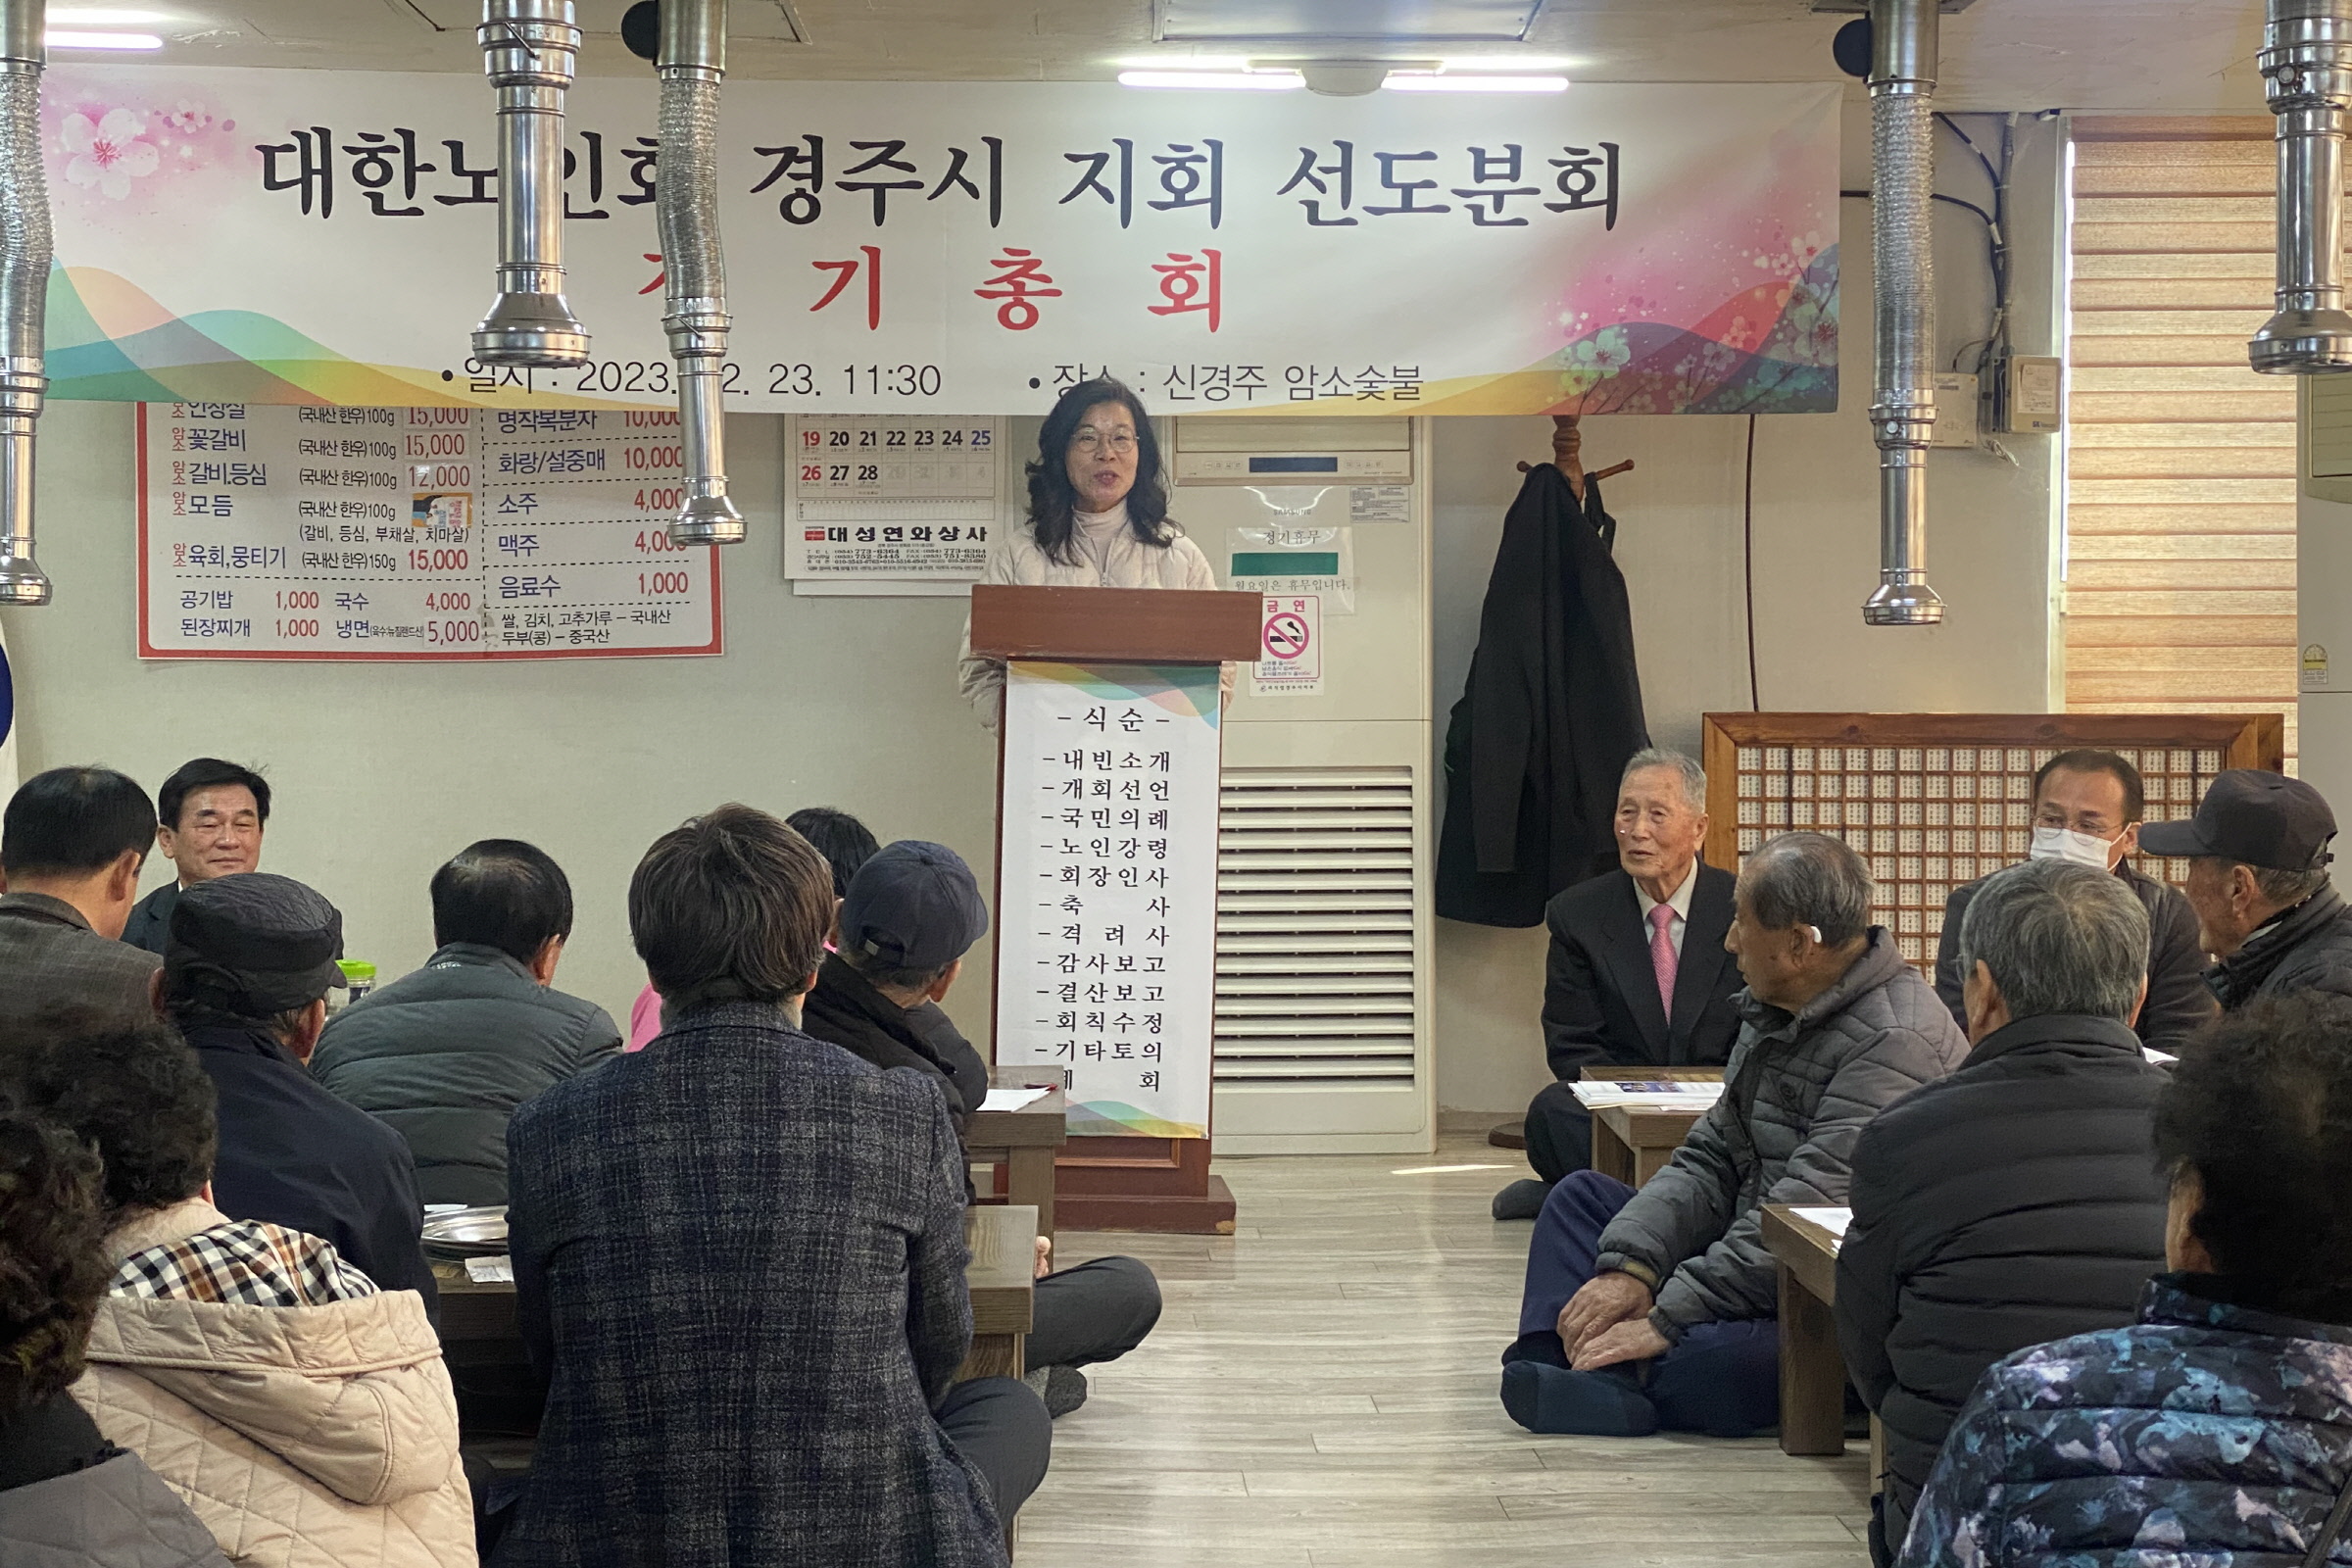 대한노인회 경주시지회 선도동분회, 2023년도 정기 총회 개최